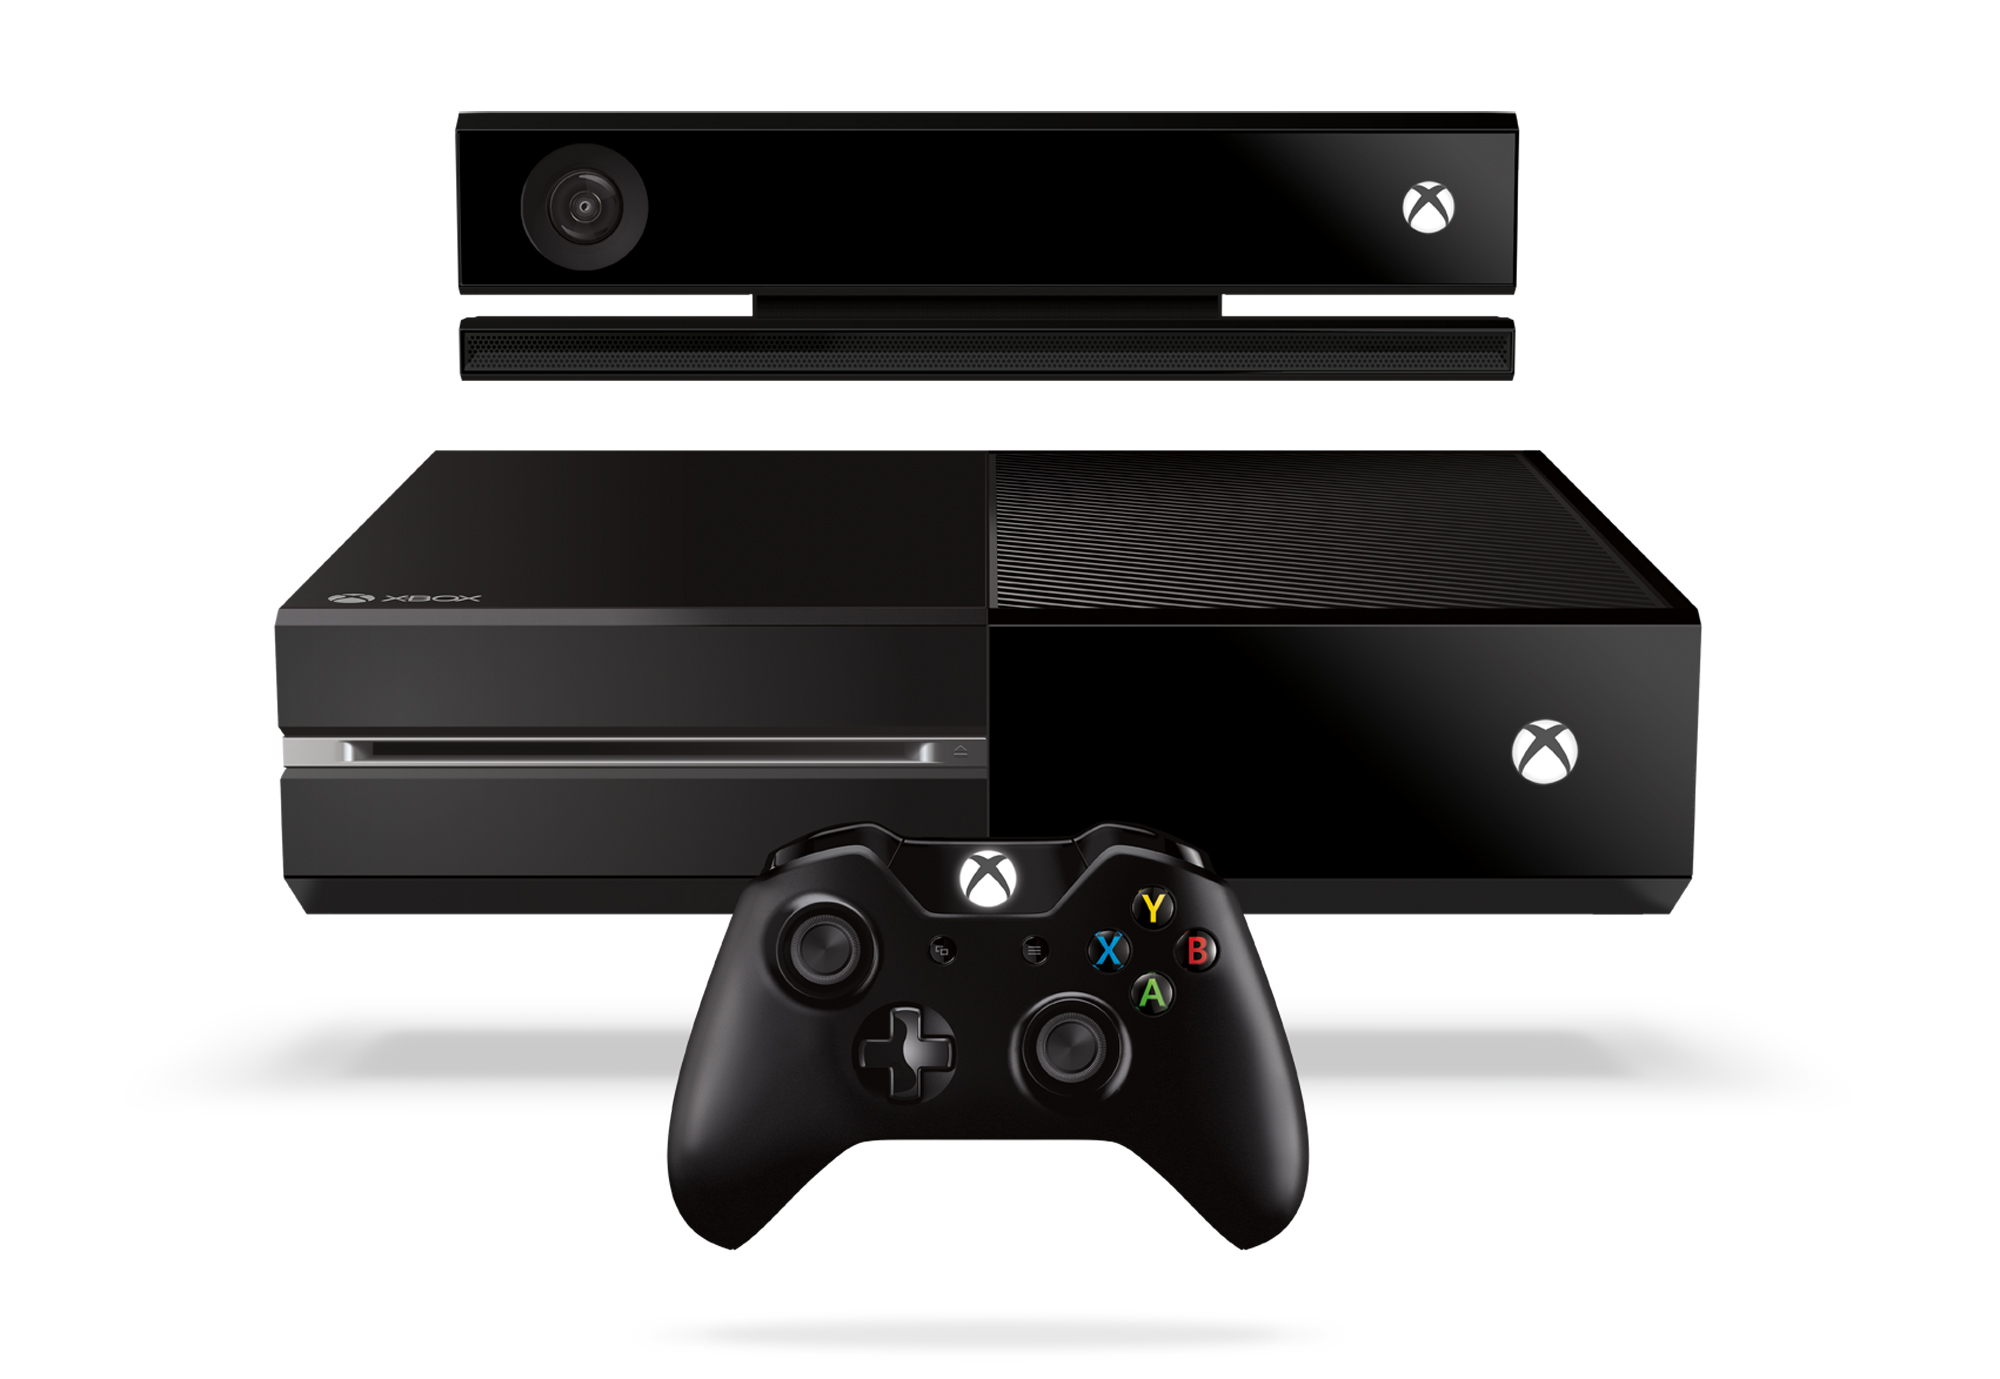 Oto nowa konsola Microsoft. Xbox One - Dziennik.pl